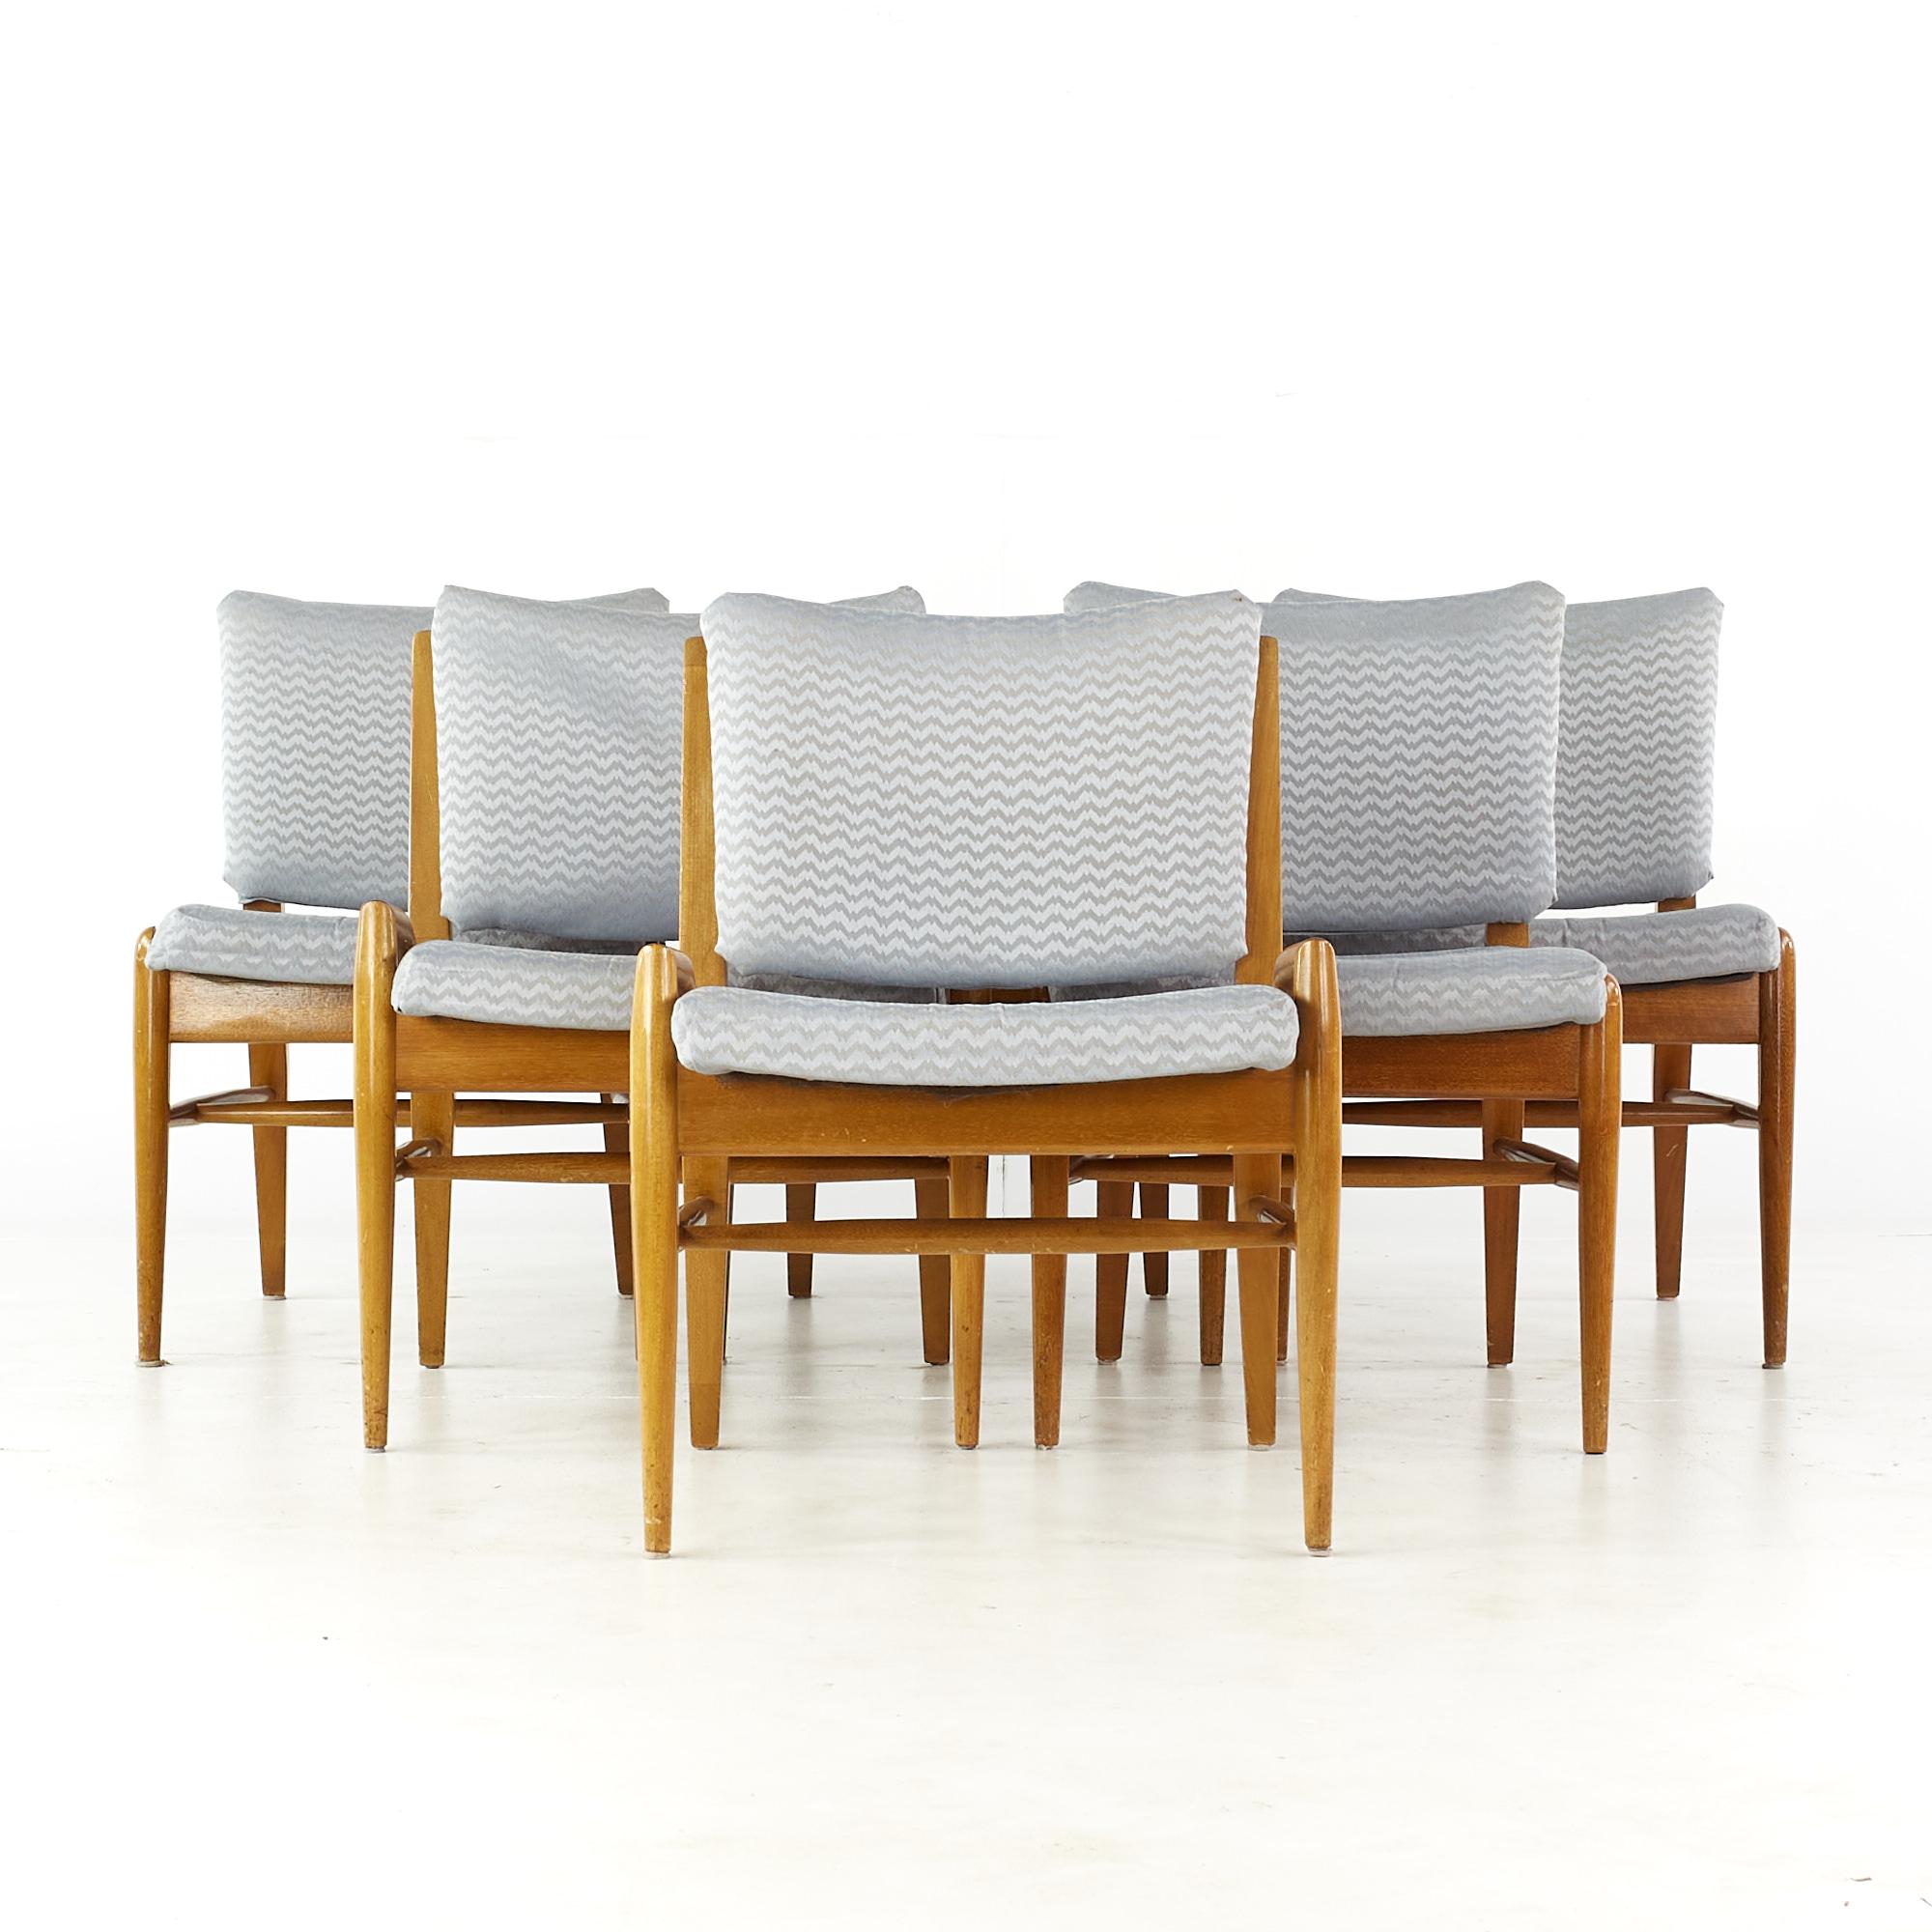 John Keal pour brown saltman chaises de salle à manger en acajou blanchi du milieu du siècle - ensemble de 6.

Chaque fauteuil sans bras mesure : 20.5 de large x 24 de profond x 30 de haut, avec une hauteur d'assise de 17,5 pouces
Chaque chaise